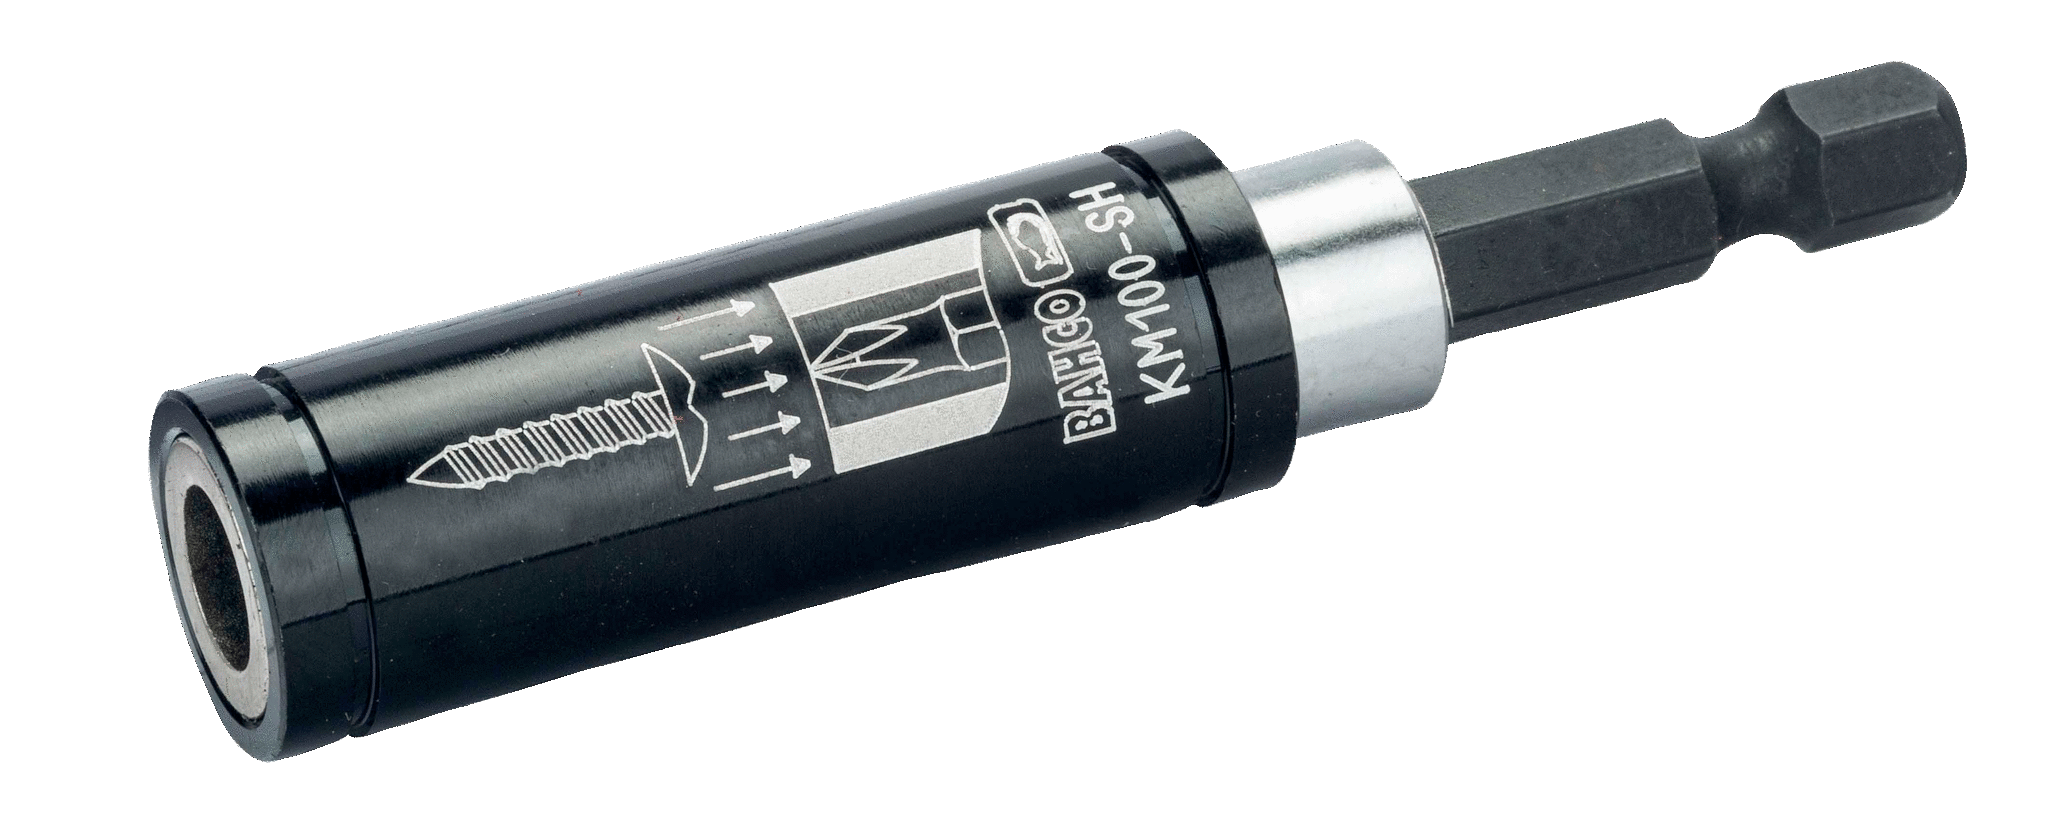 Универсальный магнитный держатель бит для отверток и винтов размером 1/4 дюйма, 82 мм BAHCO KM100-SH